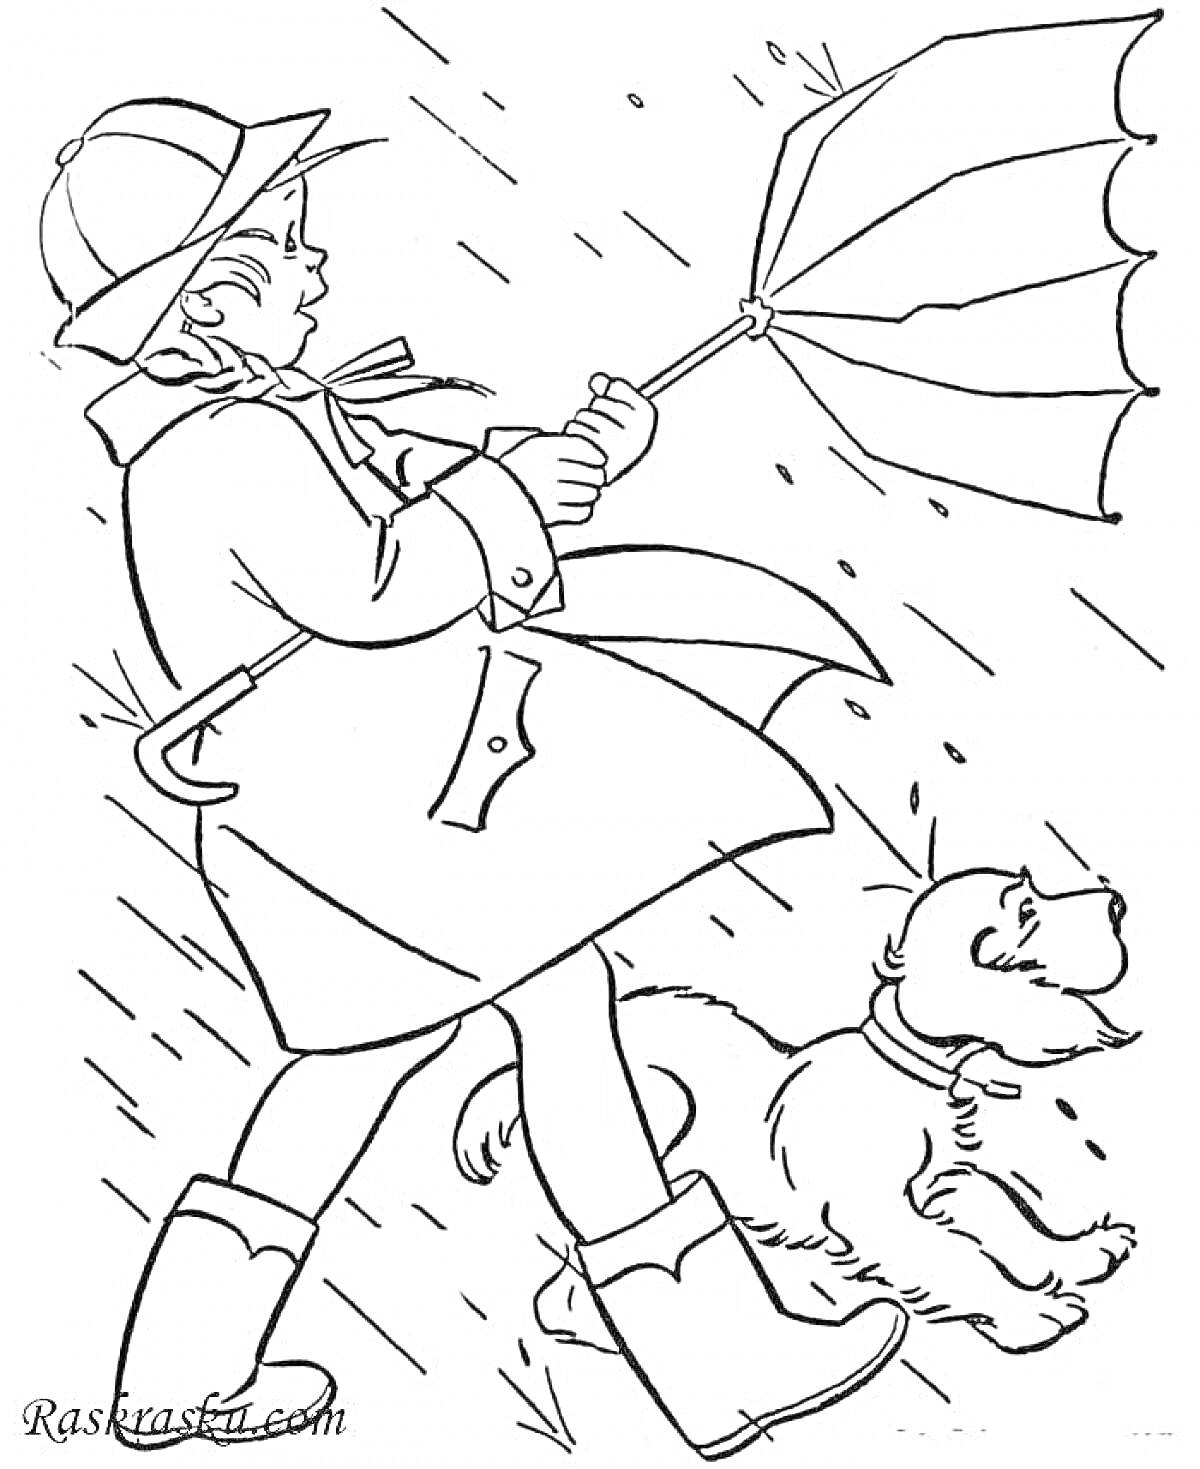 Раскраска Ребенок в плаще с зонтиком, собака, дождь и ветер